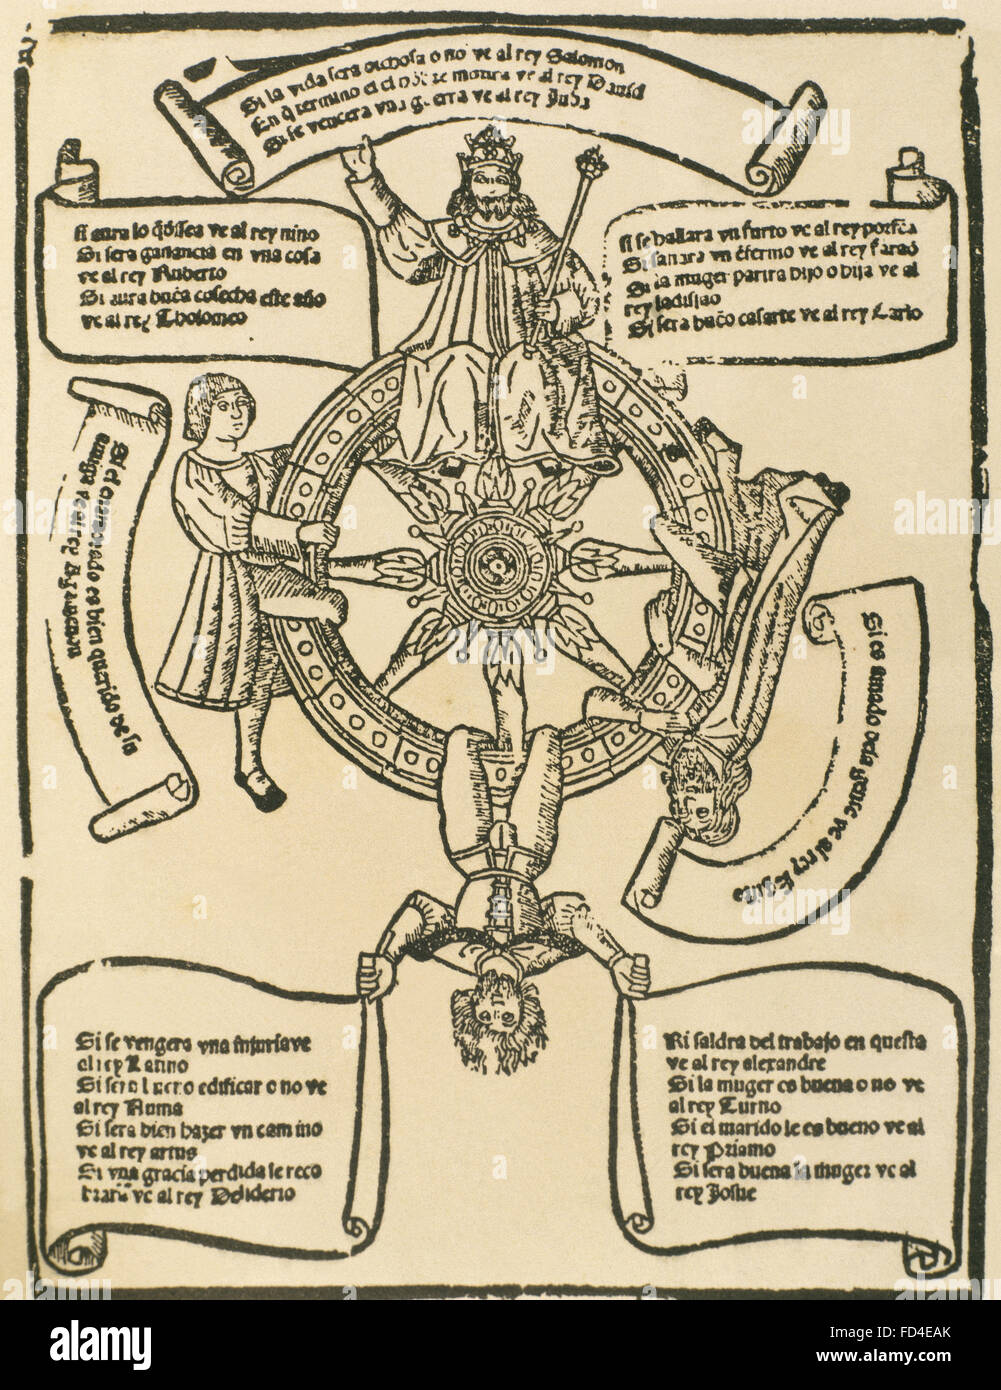 Vingt questions roue (Rueda de las preguntas vingt). Illustration d'un livre augural pratiques. Livre de jeux de hasard, publié à Valence par Jordi Costilla, 1515. L'Espagne. Banque D'Images